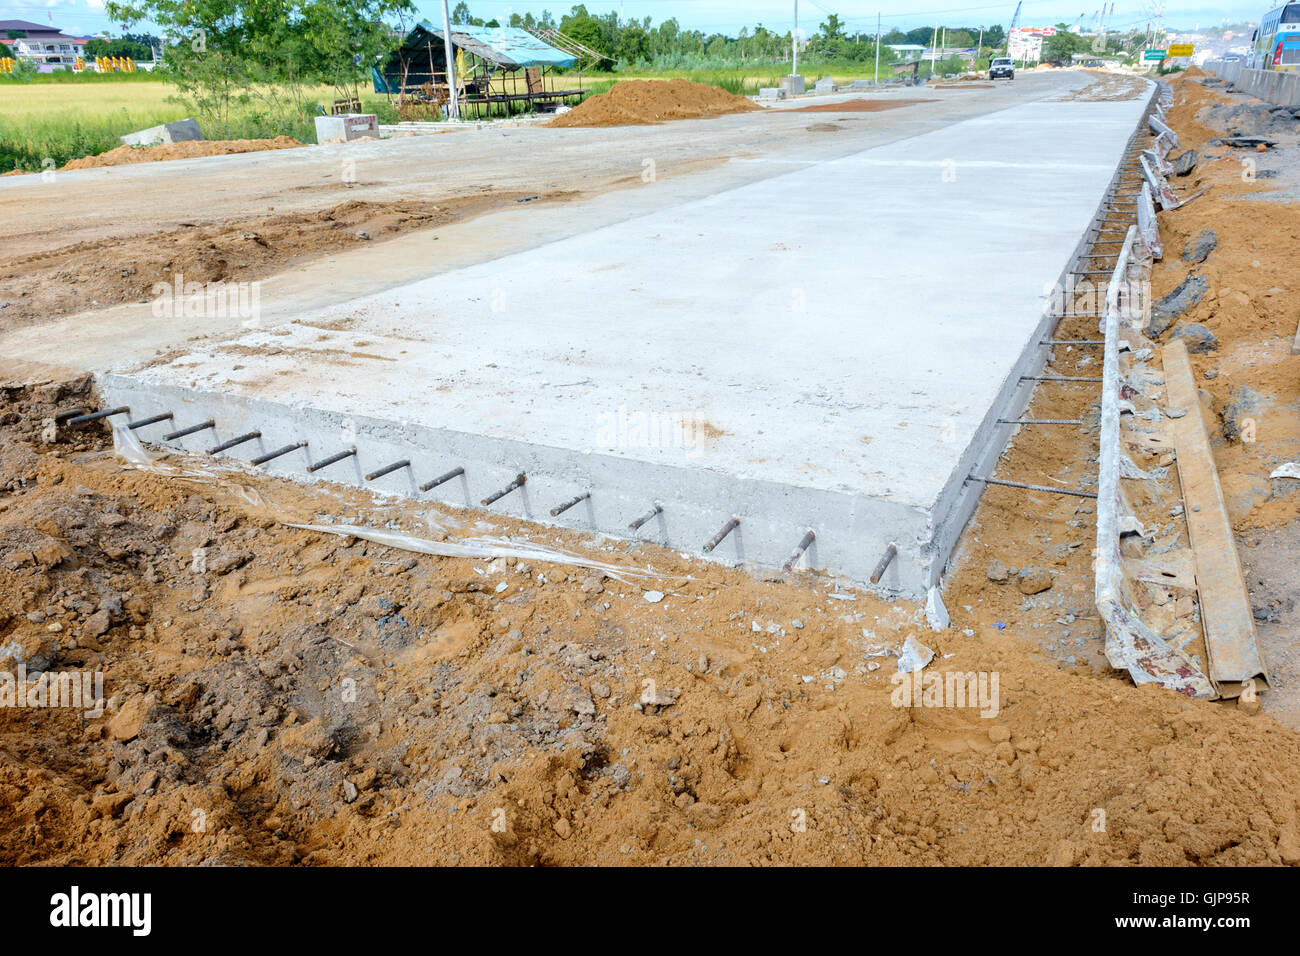 public concrete road under construction Stock Photo